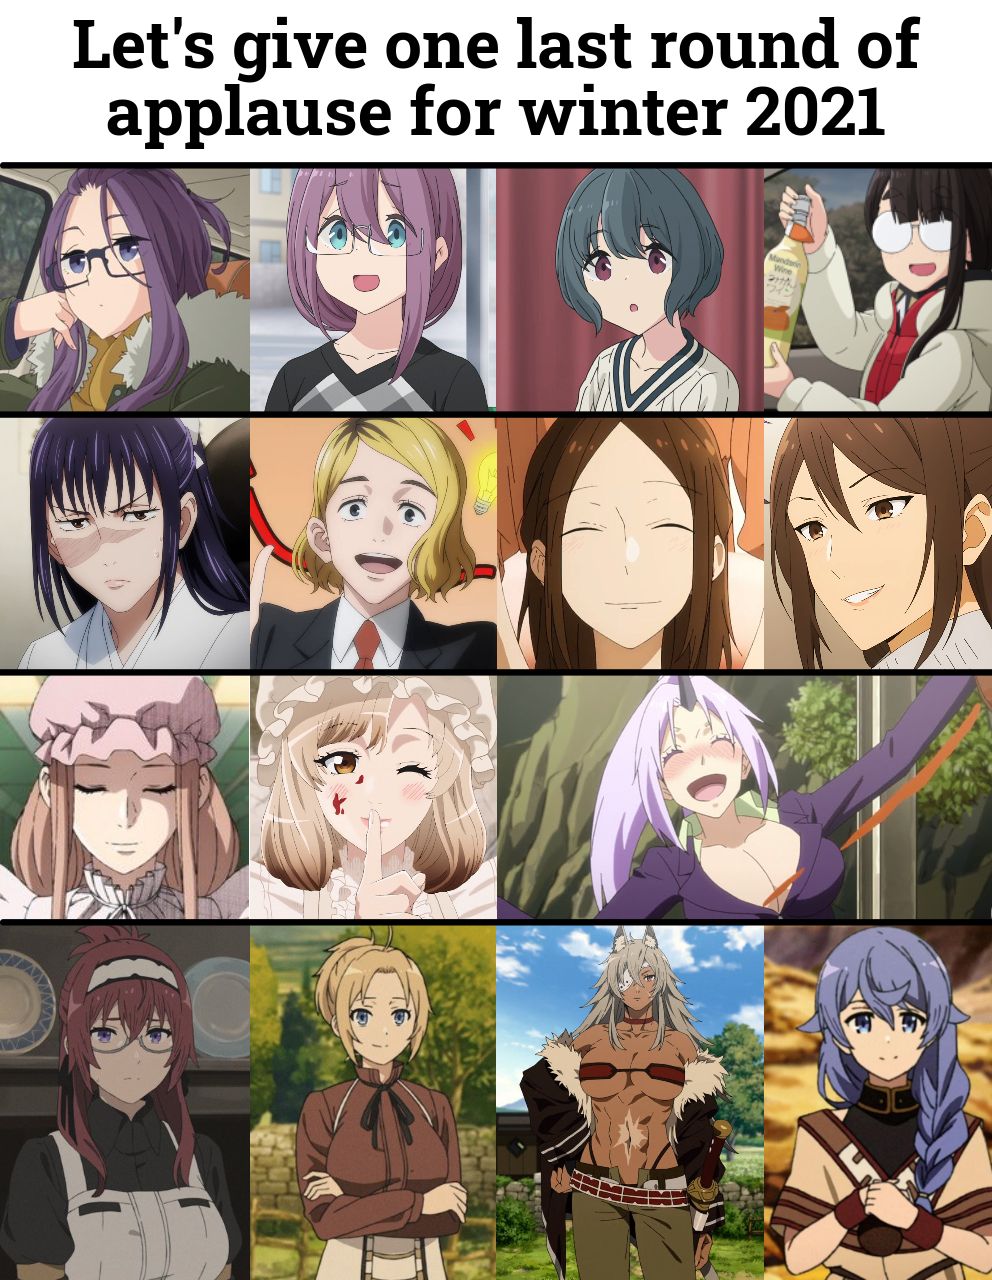 Average older anime women enjoyer